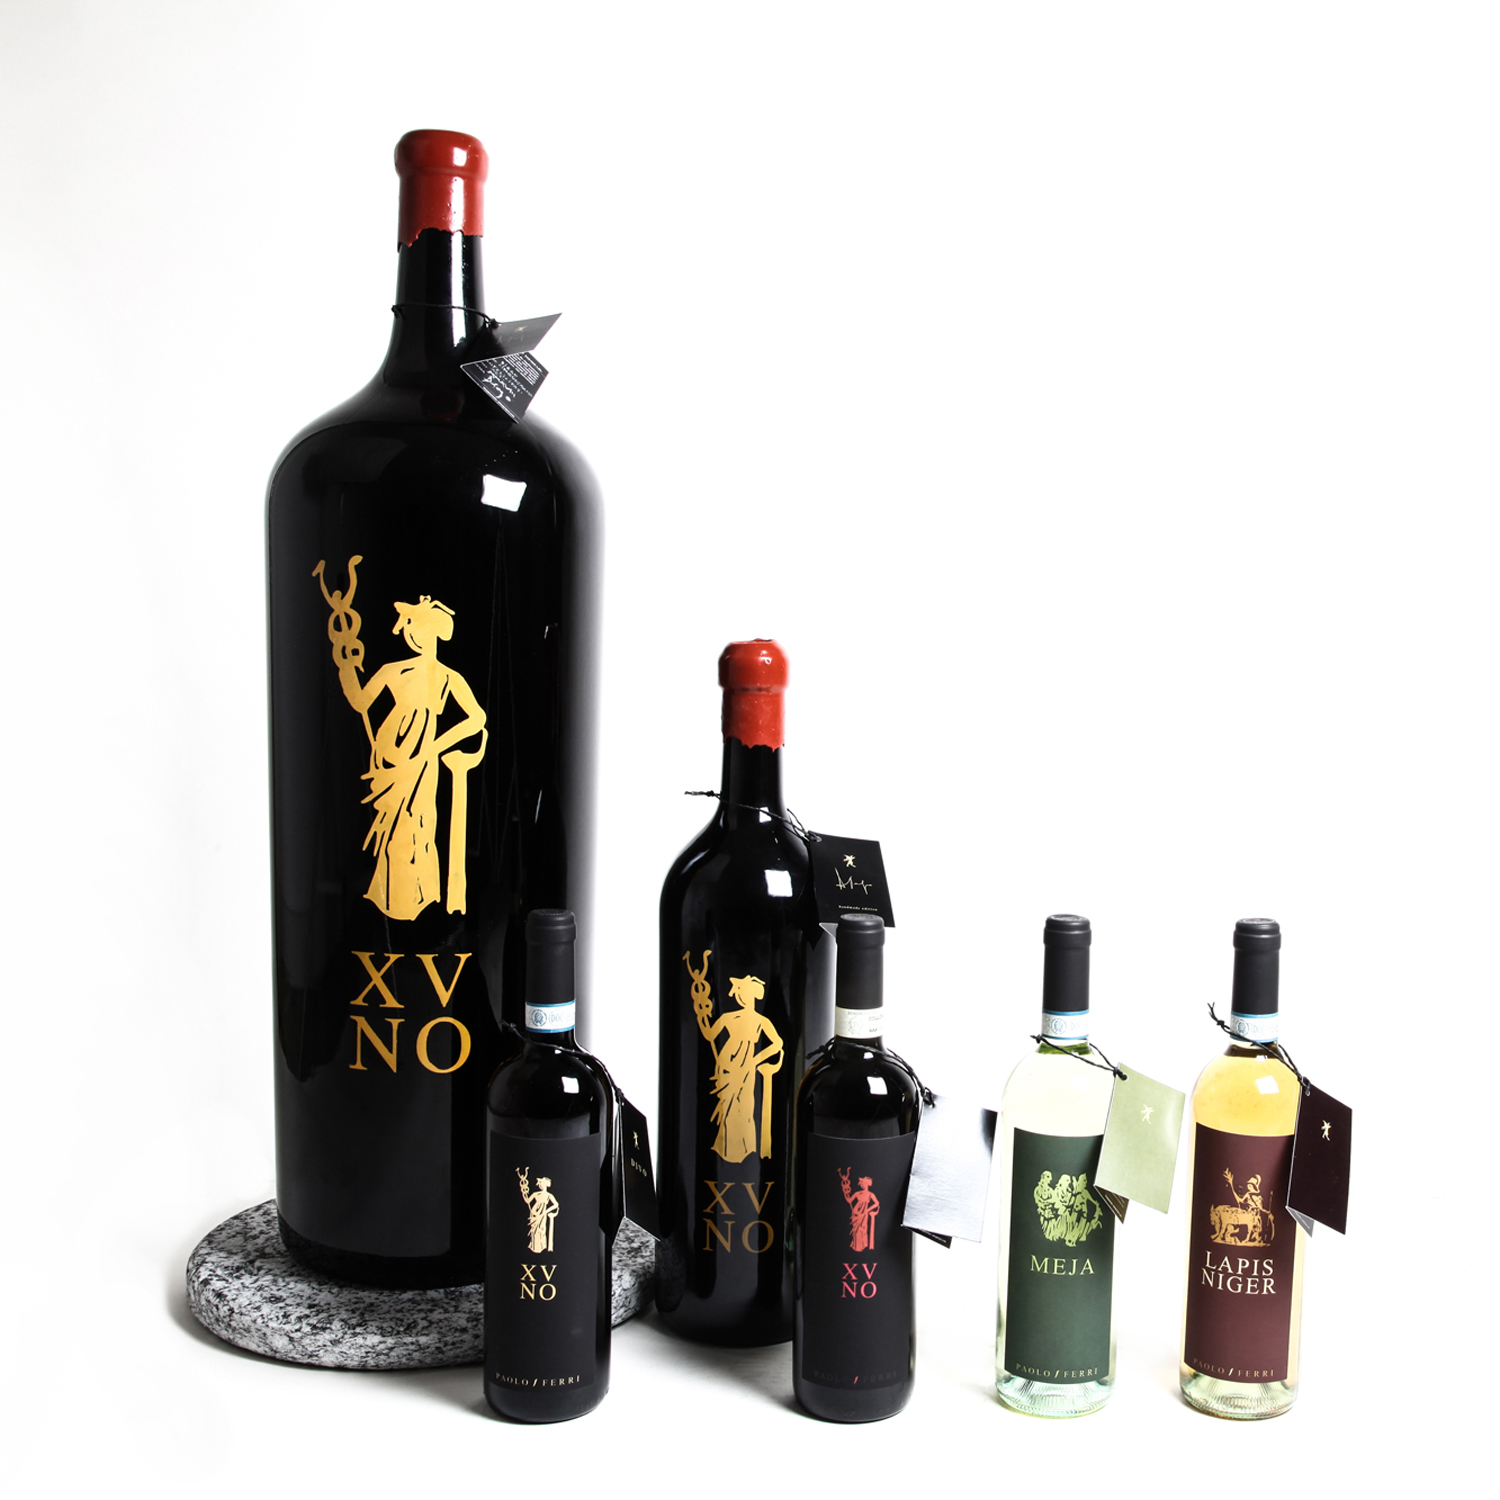 diego-cinquegrana-the-golden-torch-history-art-music-design-paolo-ferri-wines-corporate-identity-5-new